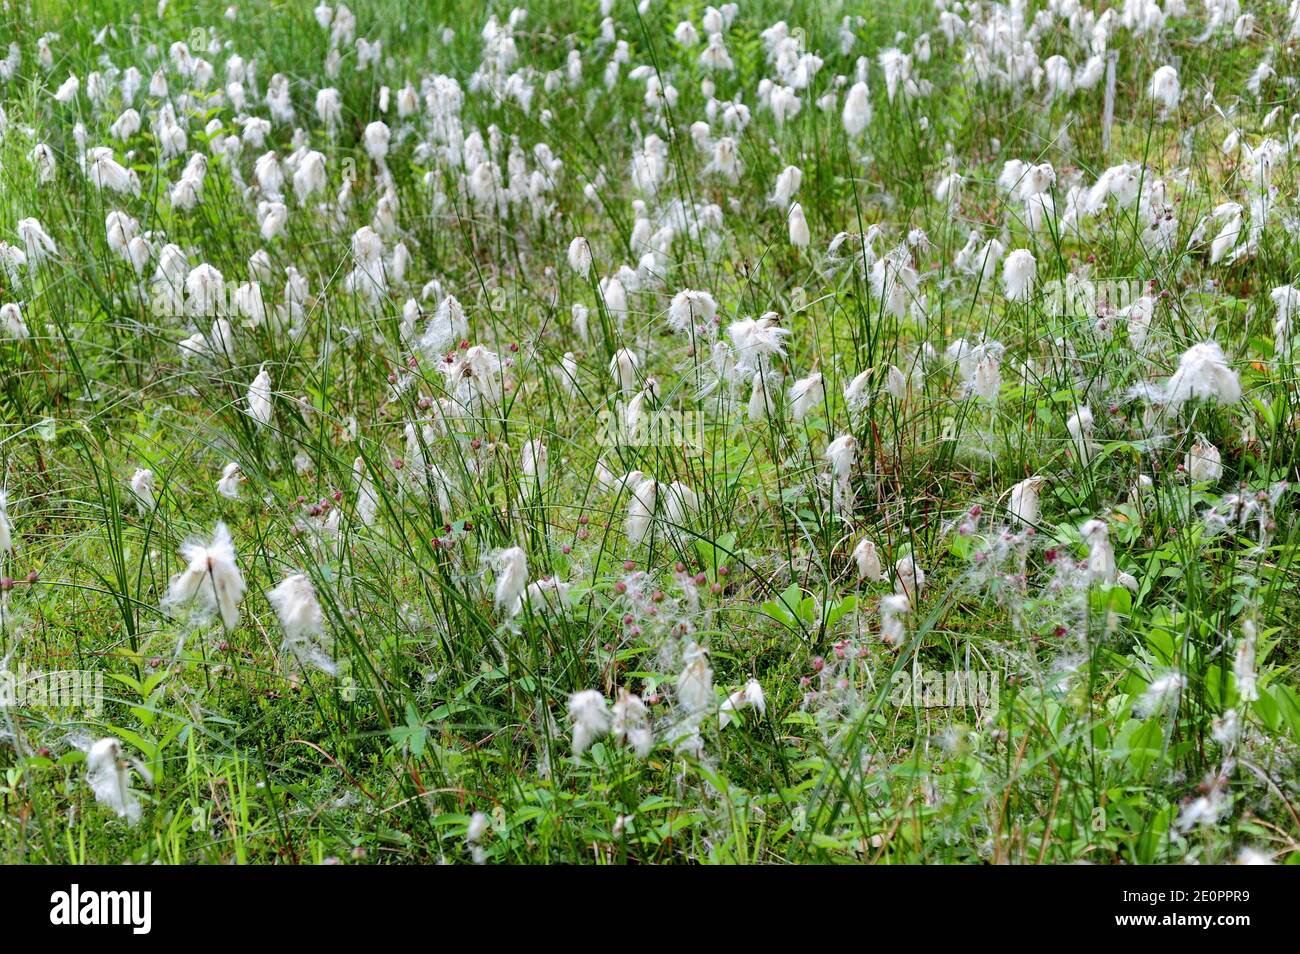 El algodón o la hierba de tussock ( eriophorum vaginatum) es una hierba perenne nativa de Europa del Norte, América del Norte y Asia del Norte. Foto de stock